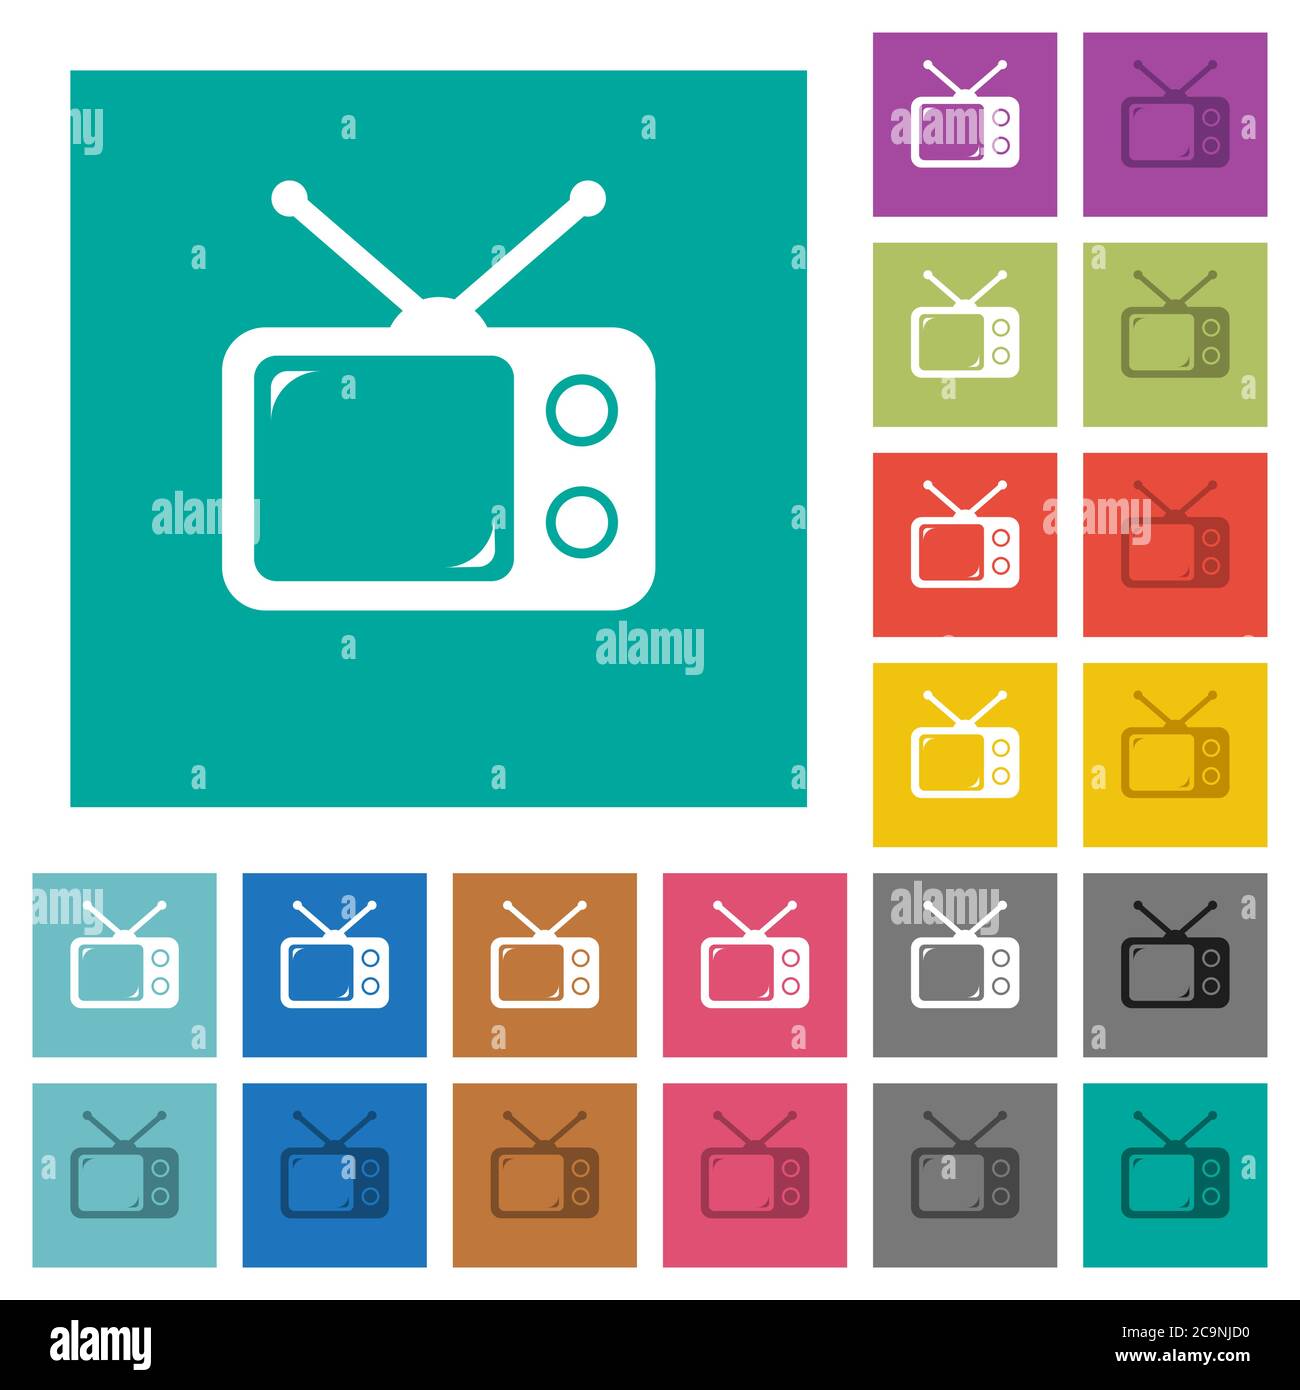 Vintage Retro-Fernseher mehrfarbige flache Symbole auf schlichten quadratischen Hintergründen. Weiße und dunklere Symbolvarianten für schwebe- oder aktive Effekte. Stock Vektor